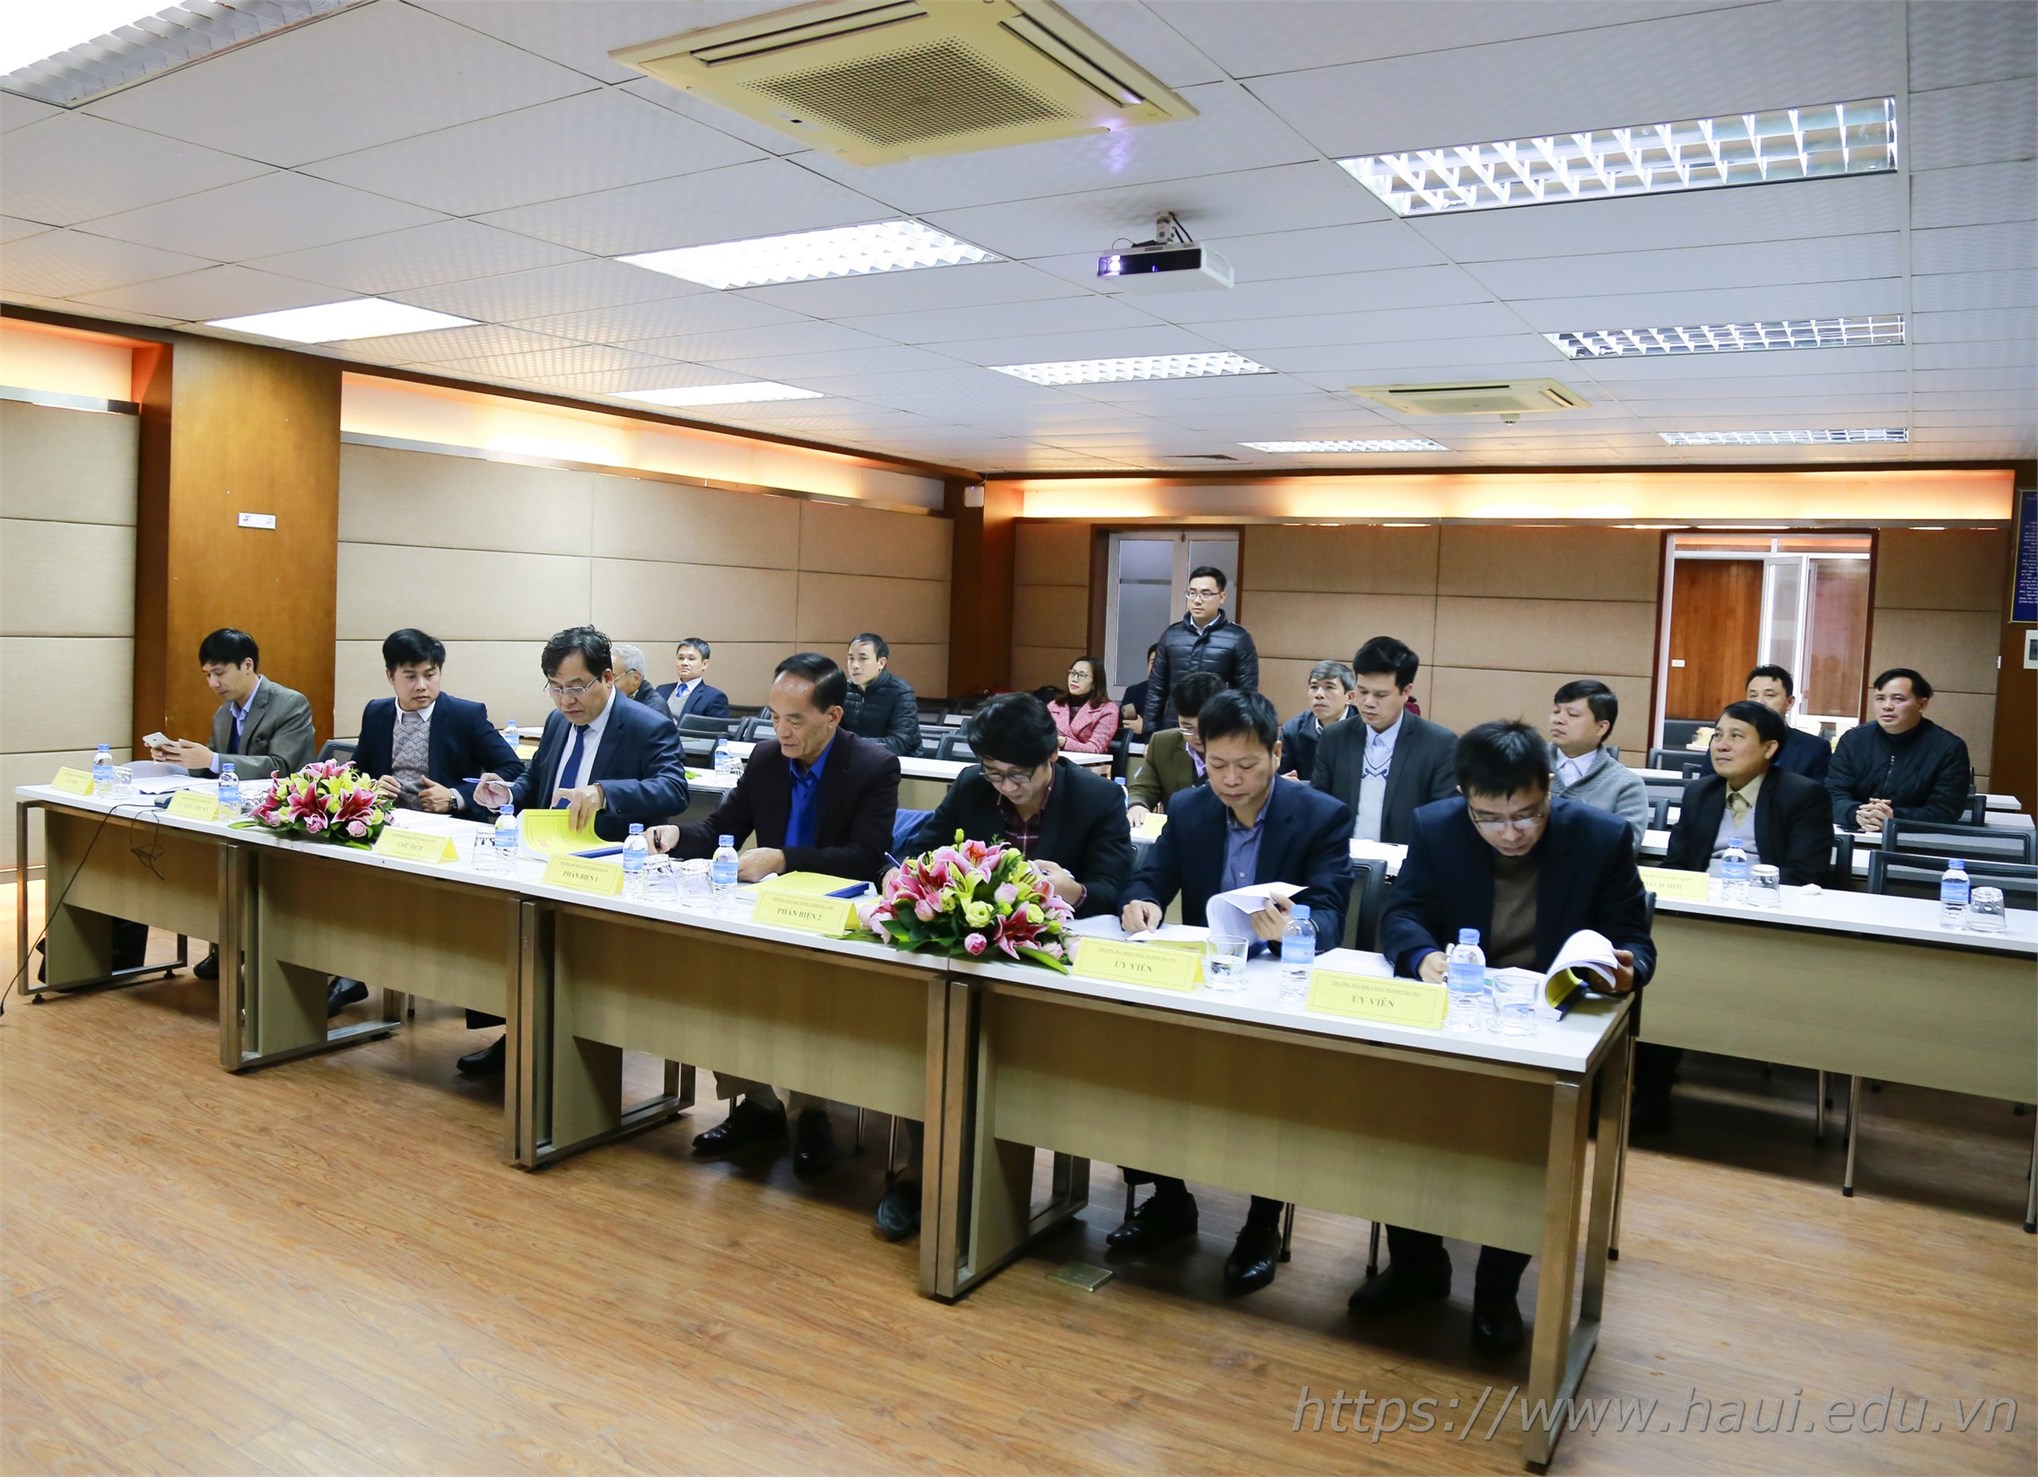 Tổ chức bảo vệ Luận án tiến sĩ cấp cơ sở cho NCS Nguyễn Văn Đức, ngành Kỹ thuật Cơ khí.